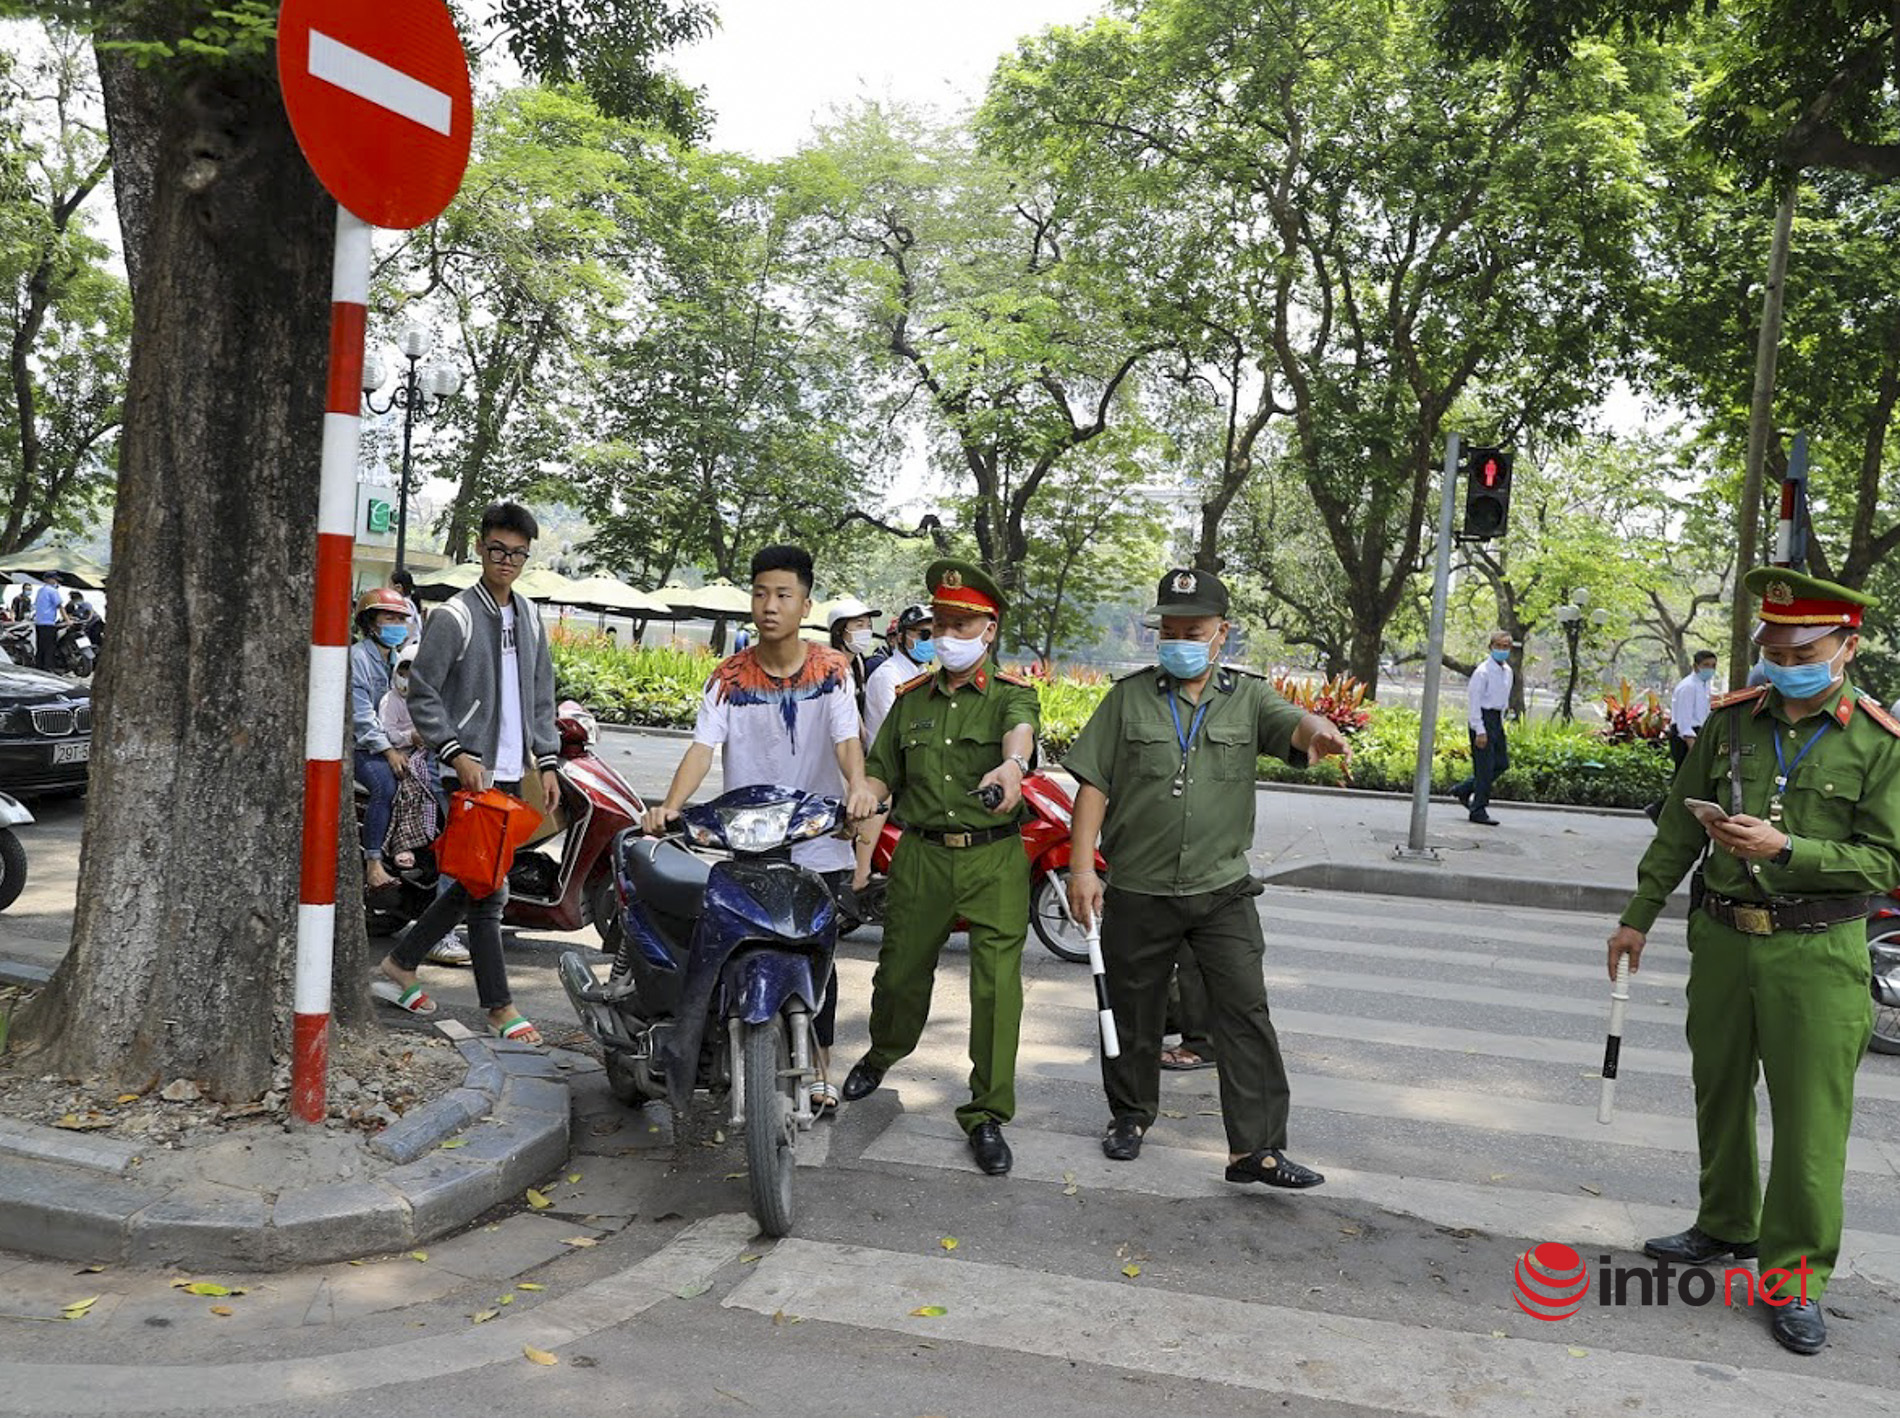 Hà Nội: Ra đường không đeo khẩu trang, nhiều người bị phạt